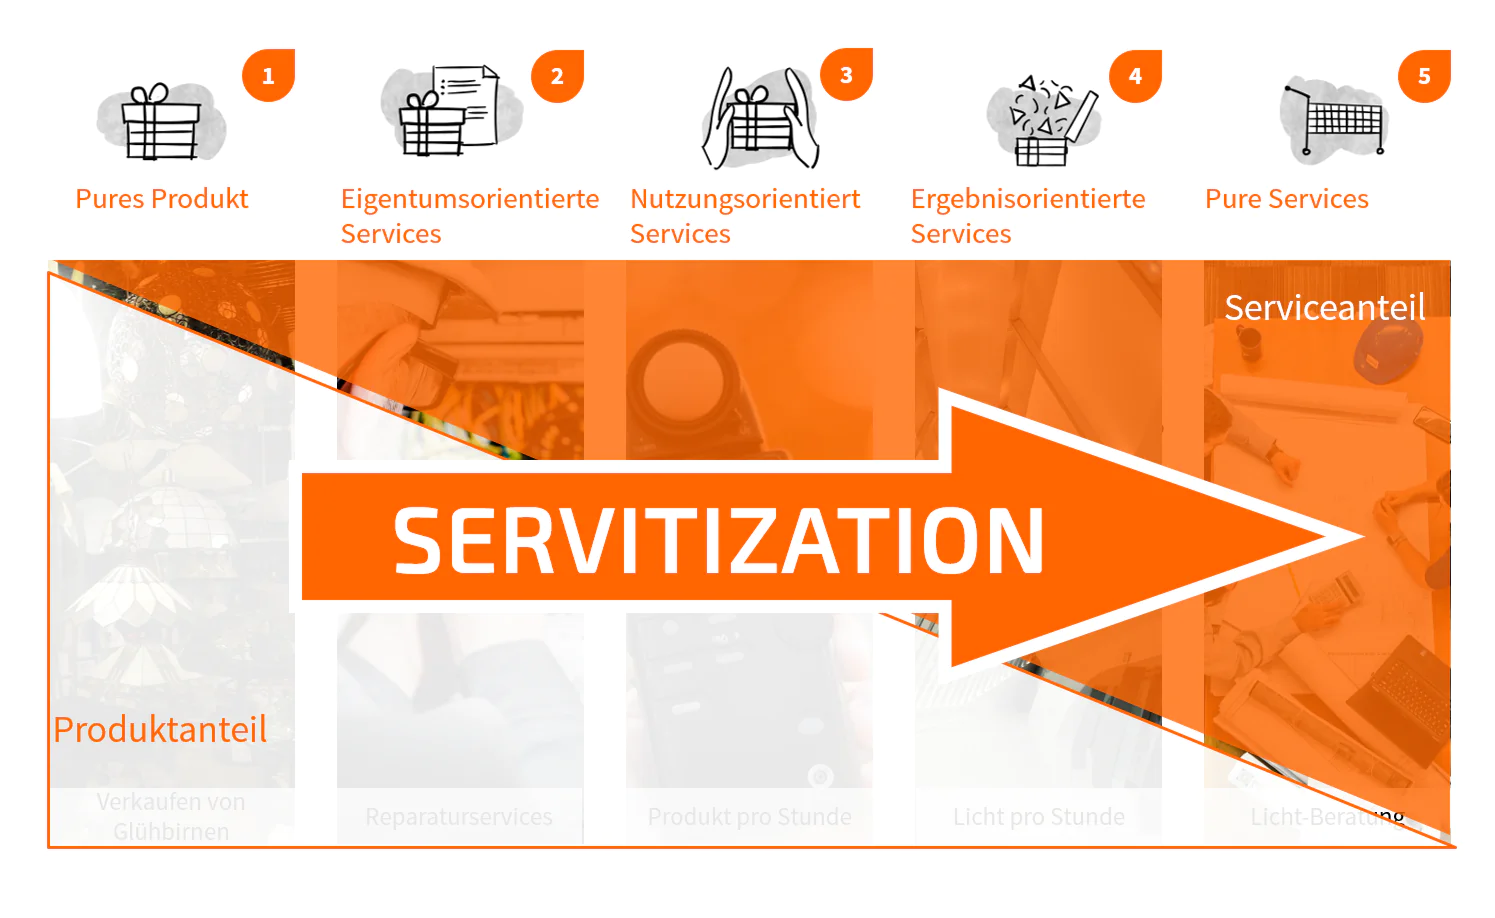 Servitization als Geschäftsmodellinnovation in 5 Ausprägungen - TOM SPIKE